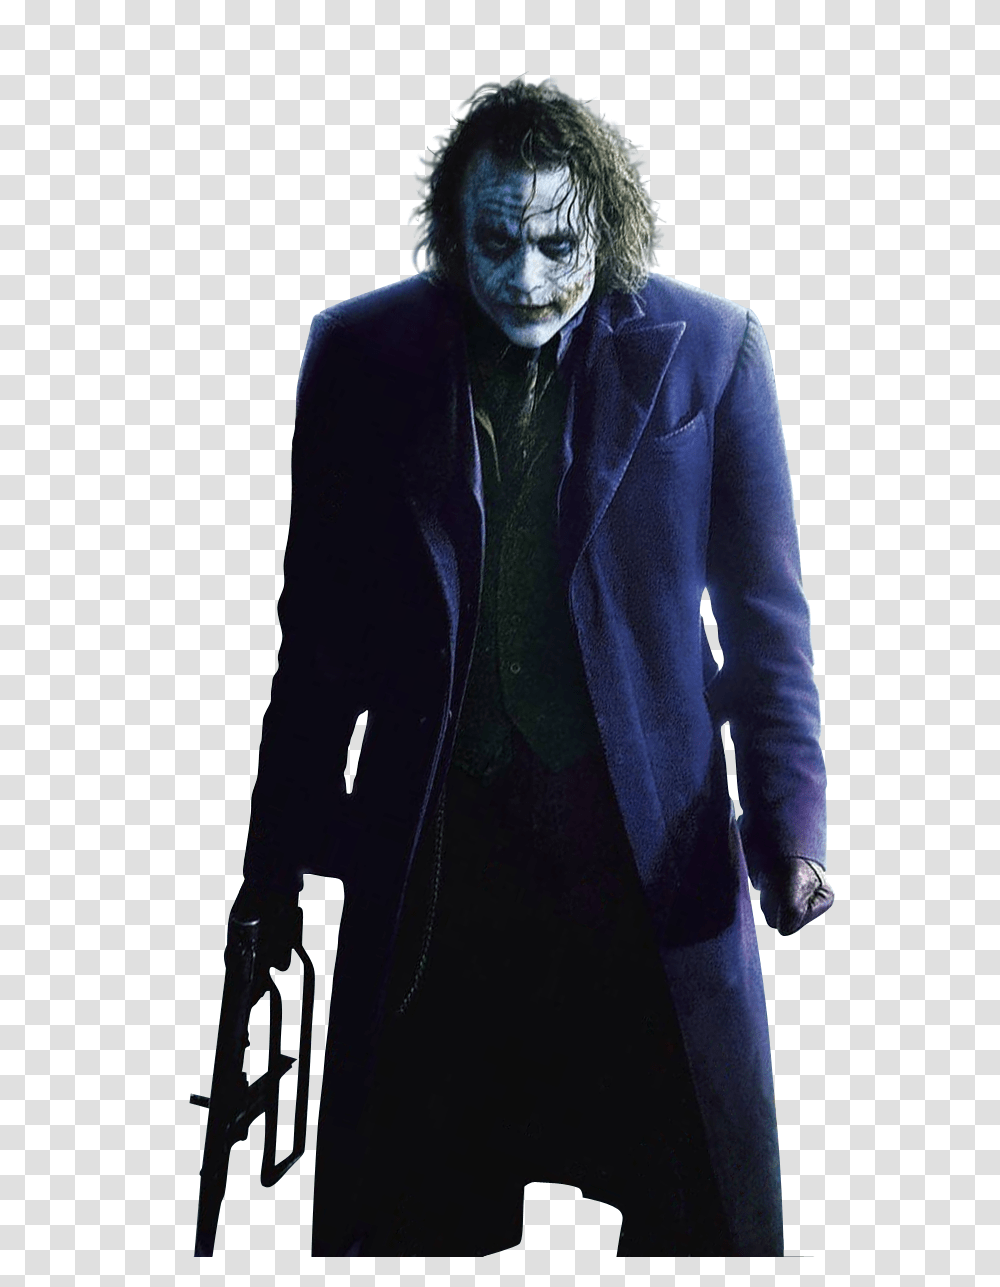 Joker, Character, Overcoat, Suit Transparent Png